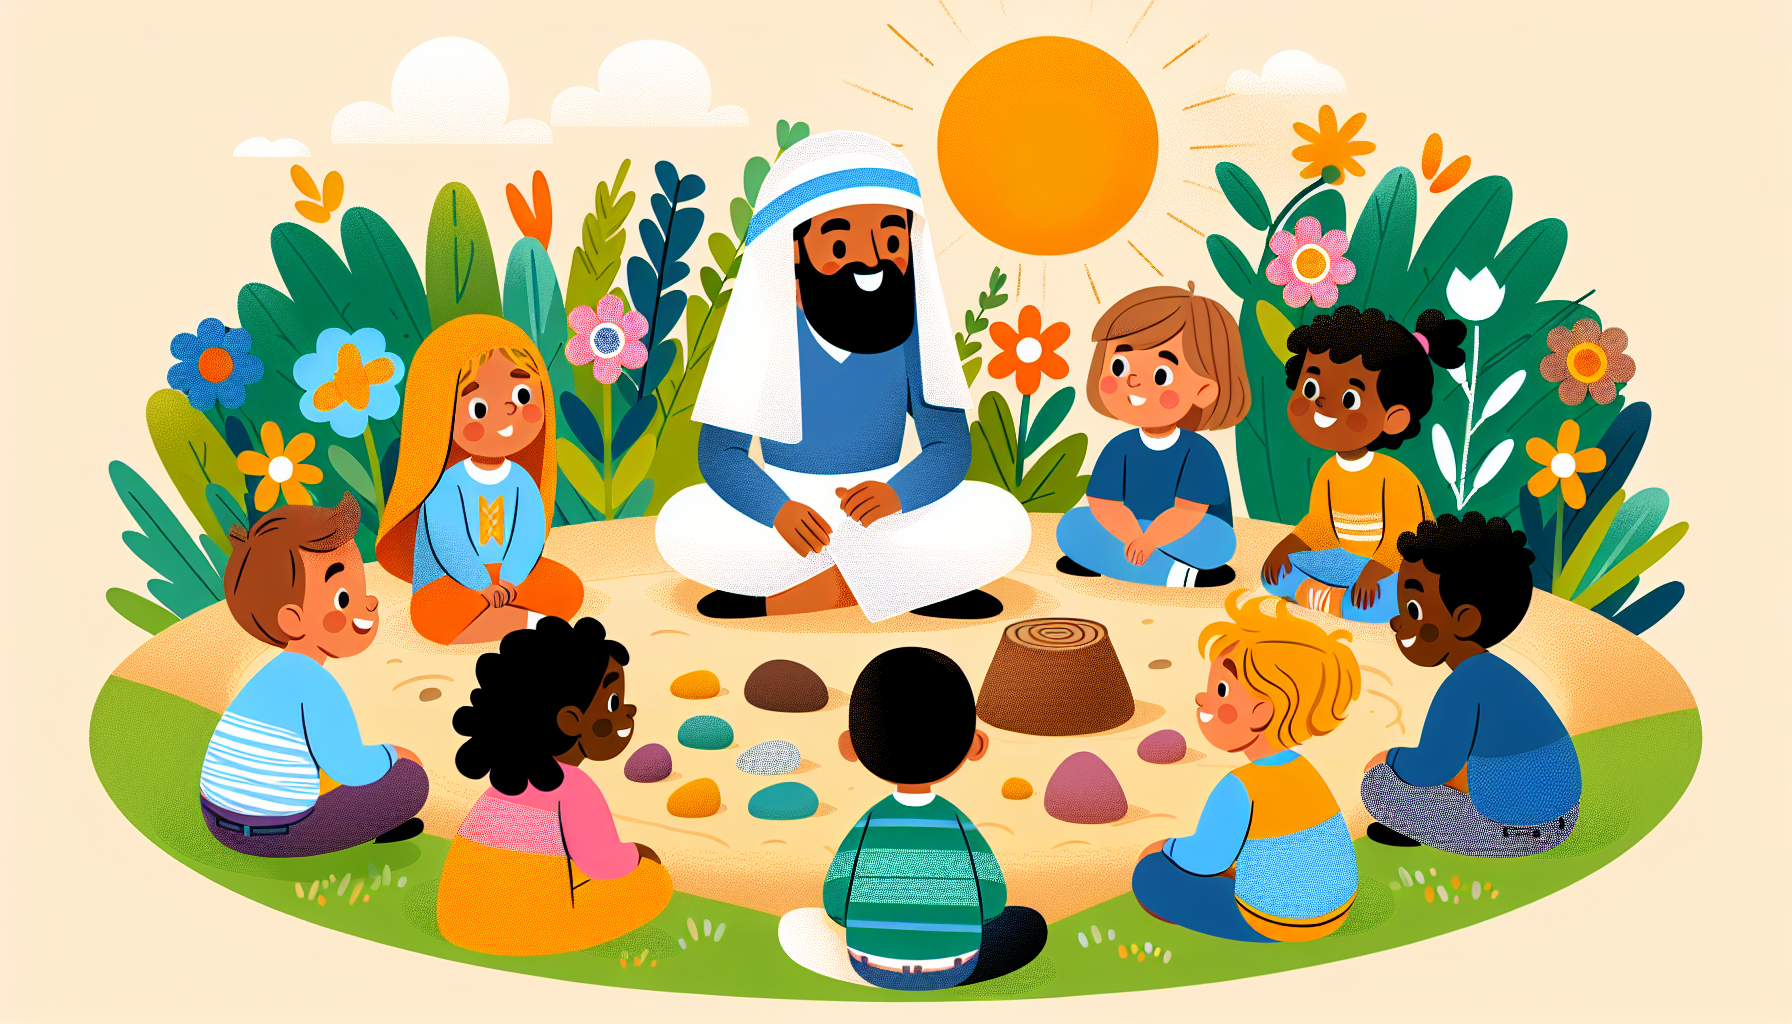 Una ilustración colorida y amigable donde un grupo de niños diversos está sentado alrededor de una persona que representa a Jesús, escuchando atentamente mientras él les explica parábolas usando objet